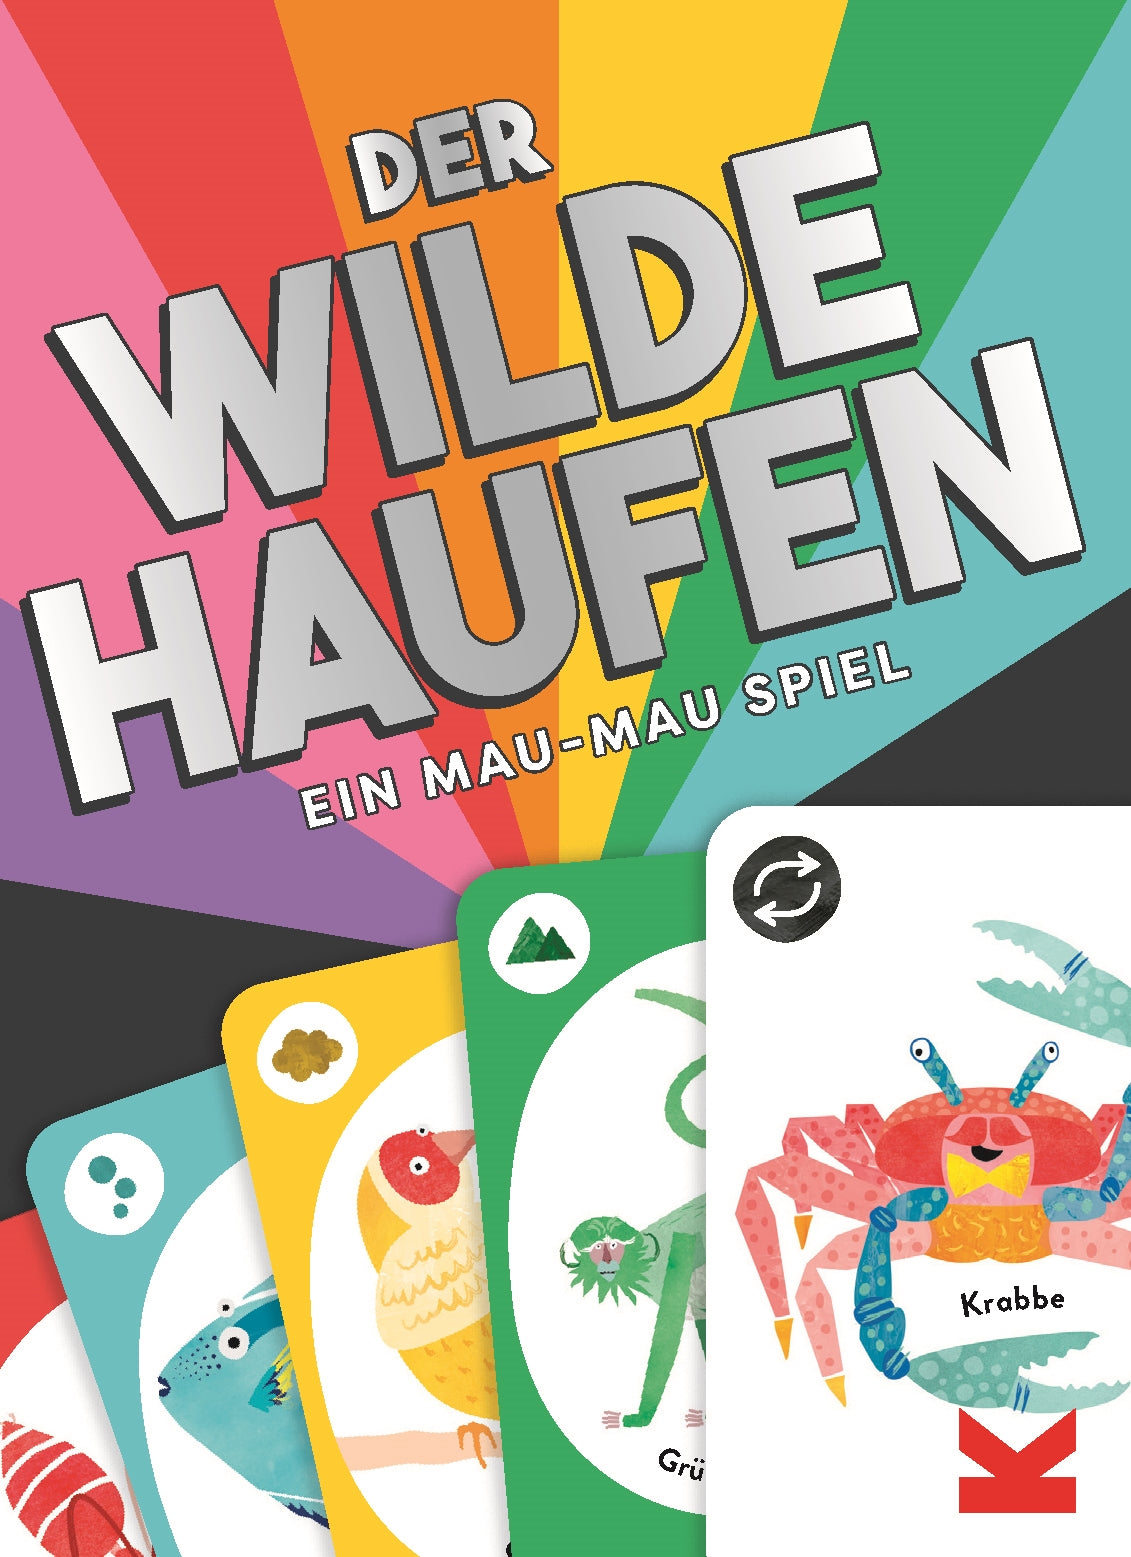 Der wilde Haufen by Leanne Bock, Ulrich Korn, Magma Publishing Ltd